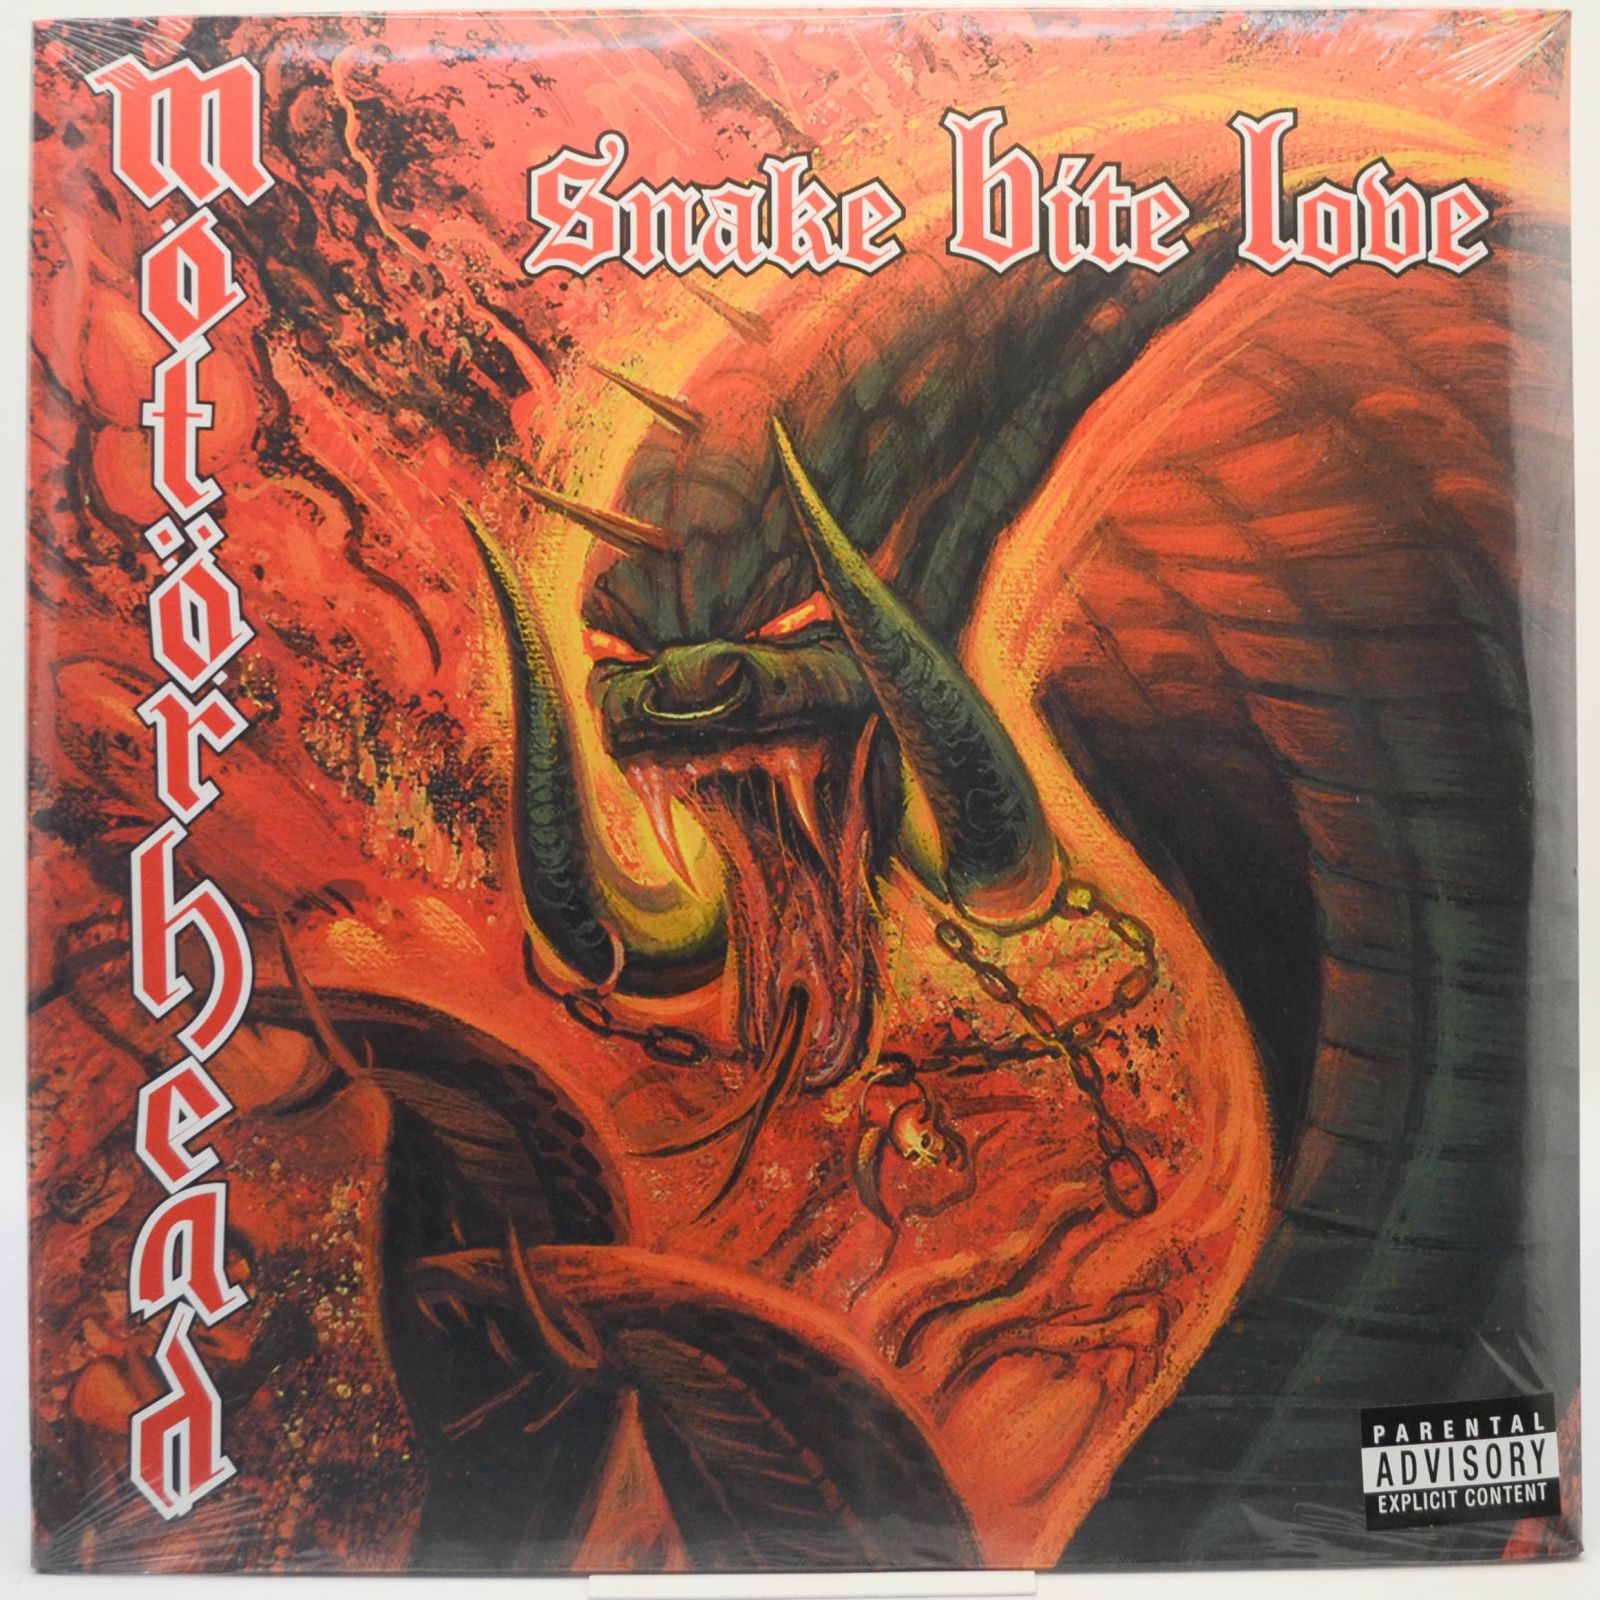 Motörhead — Snake Bite Love, 1998